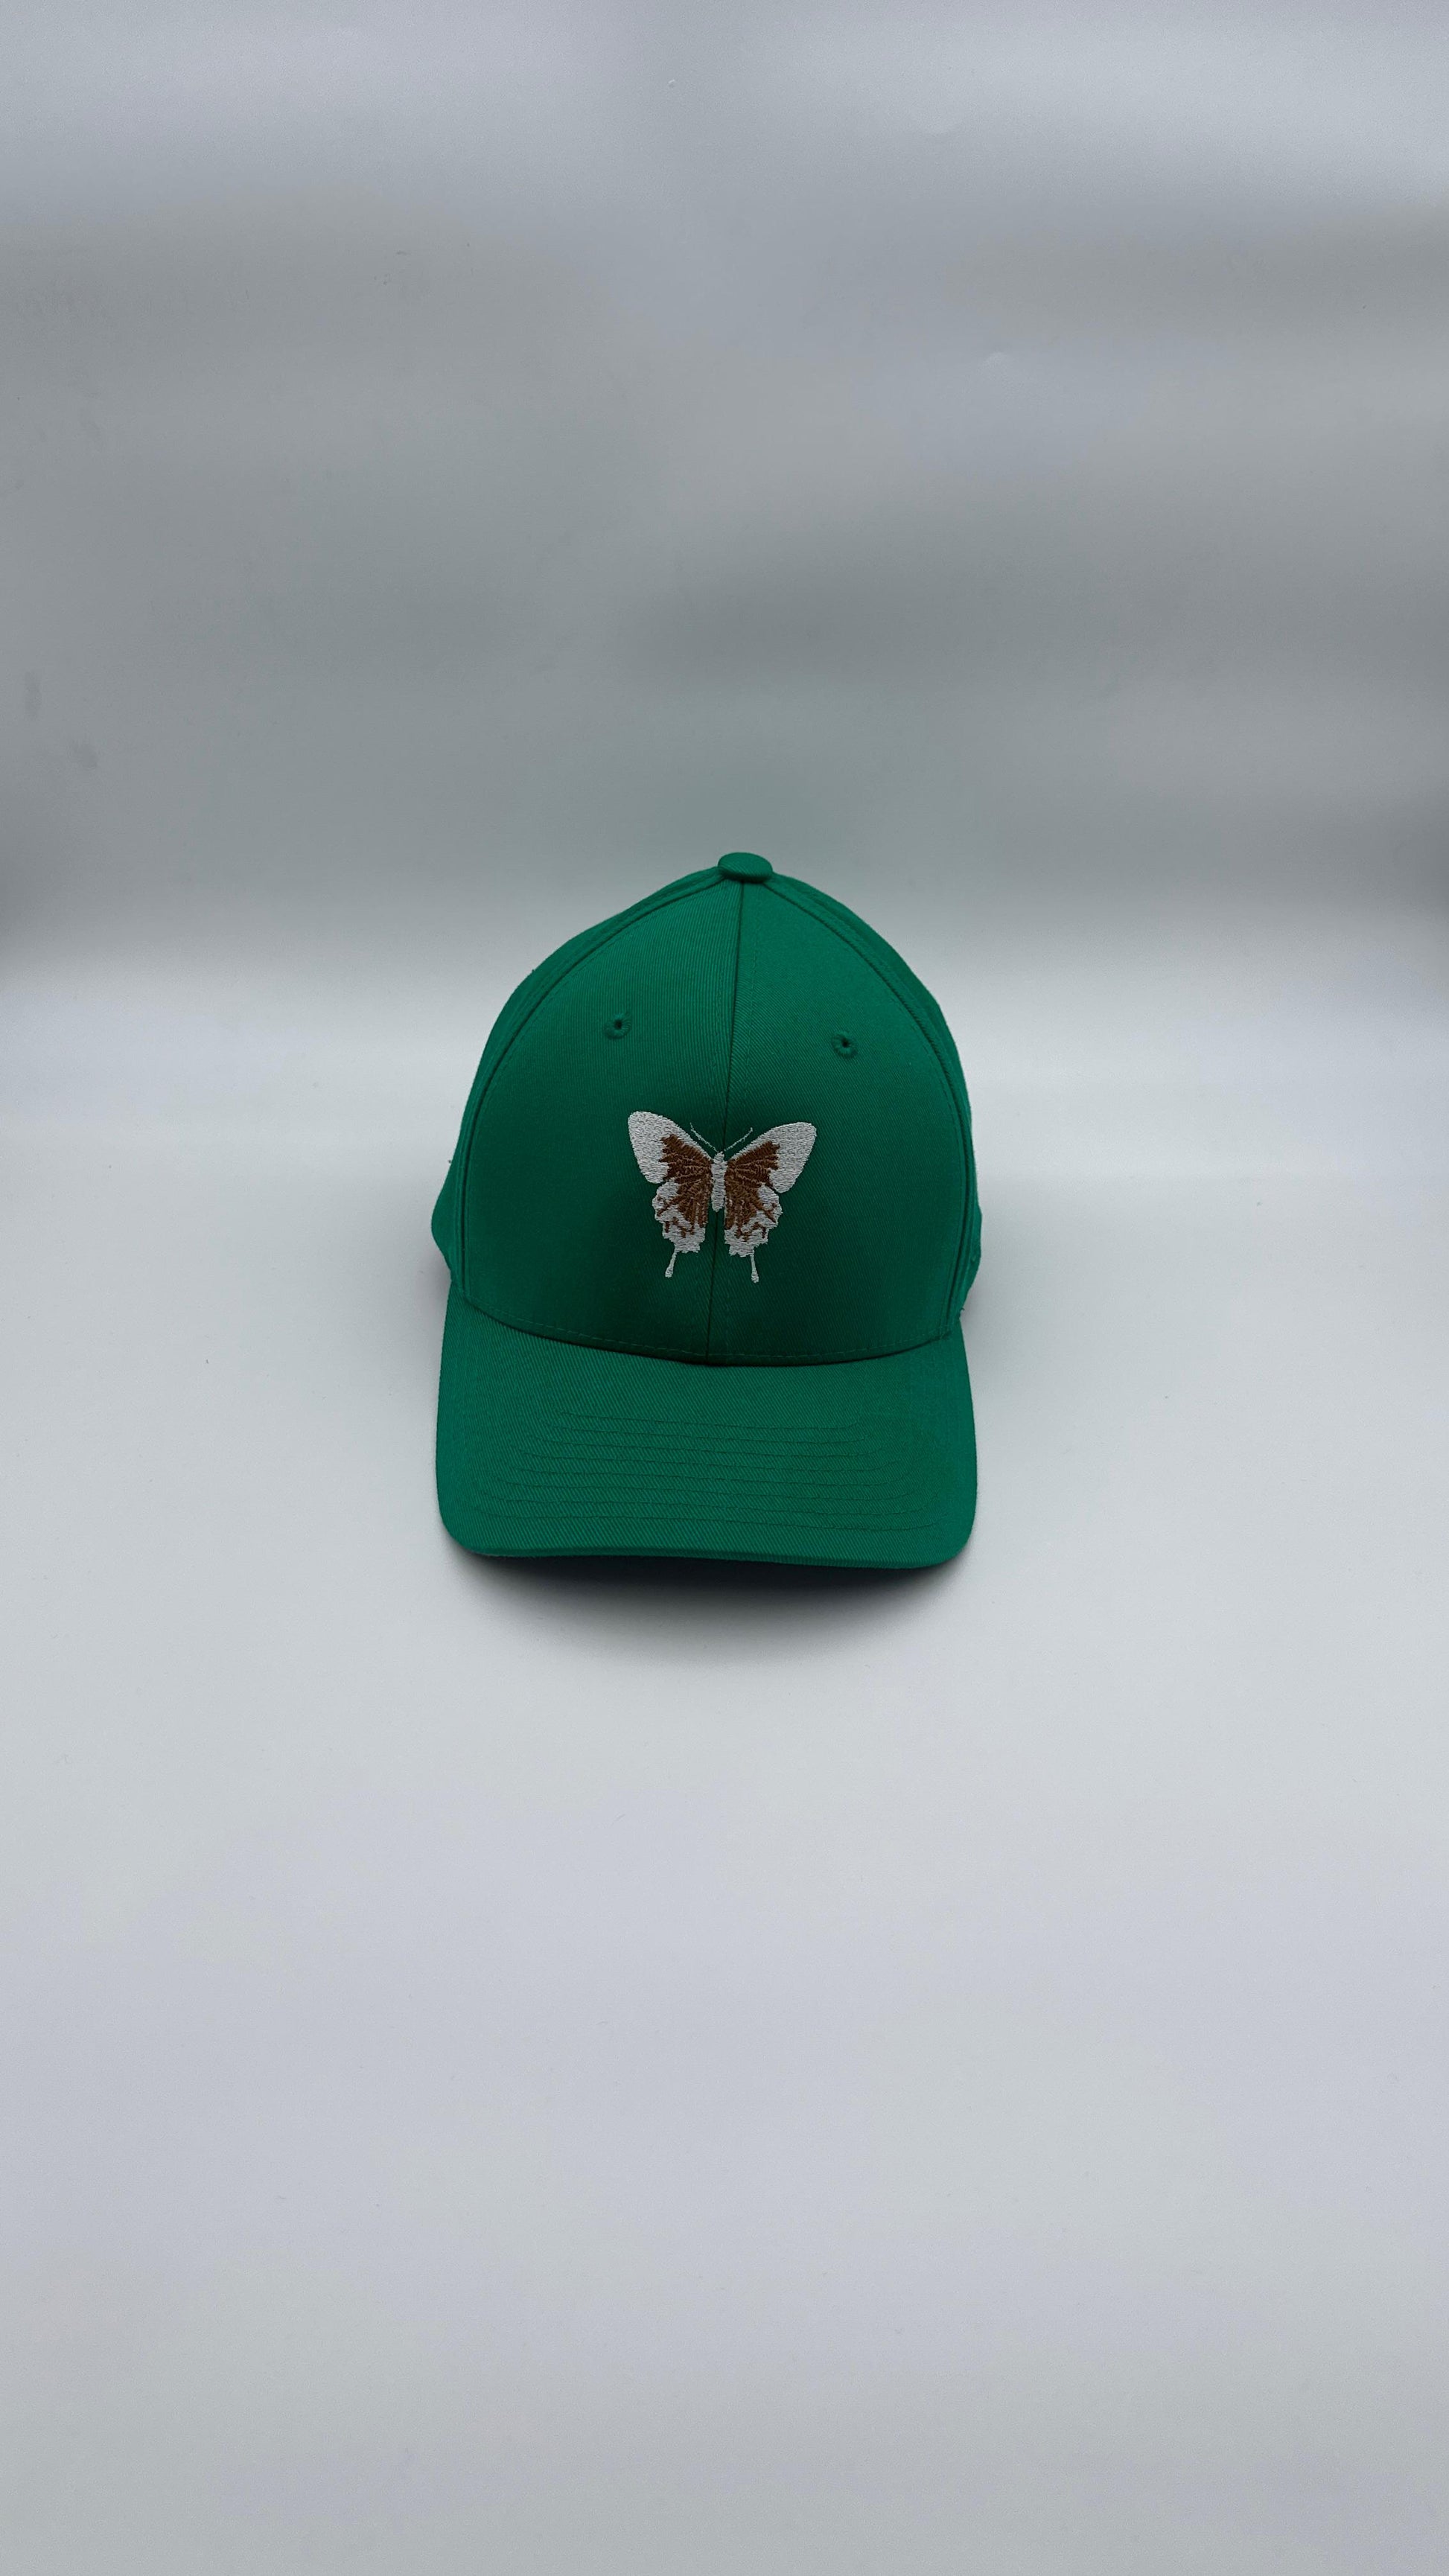 Butterfly Cap “Bronze on Green” - Butterfly Sneakers